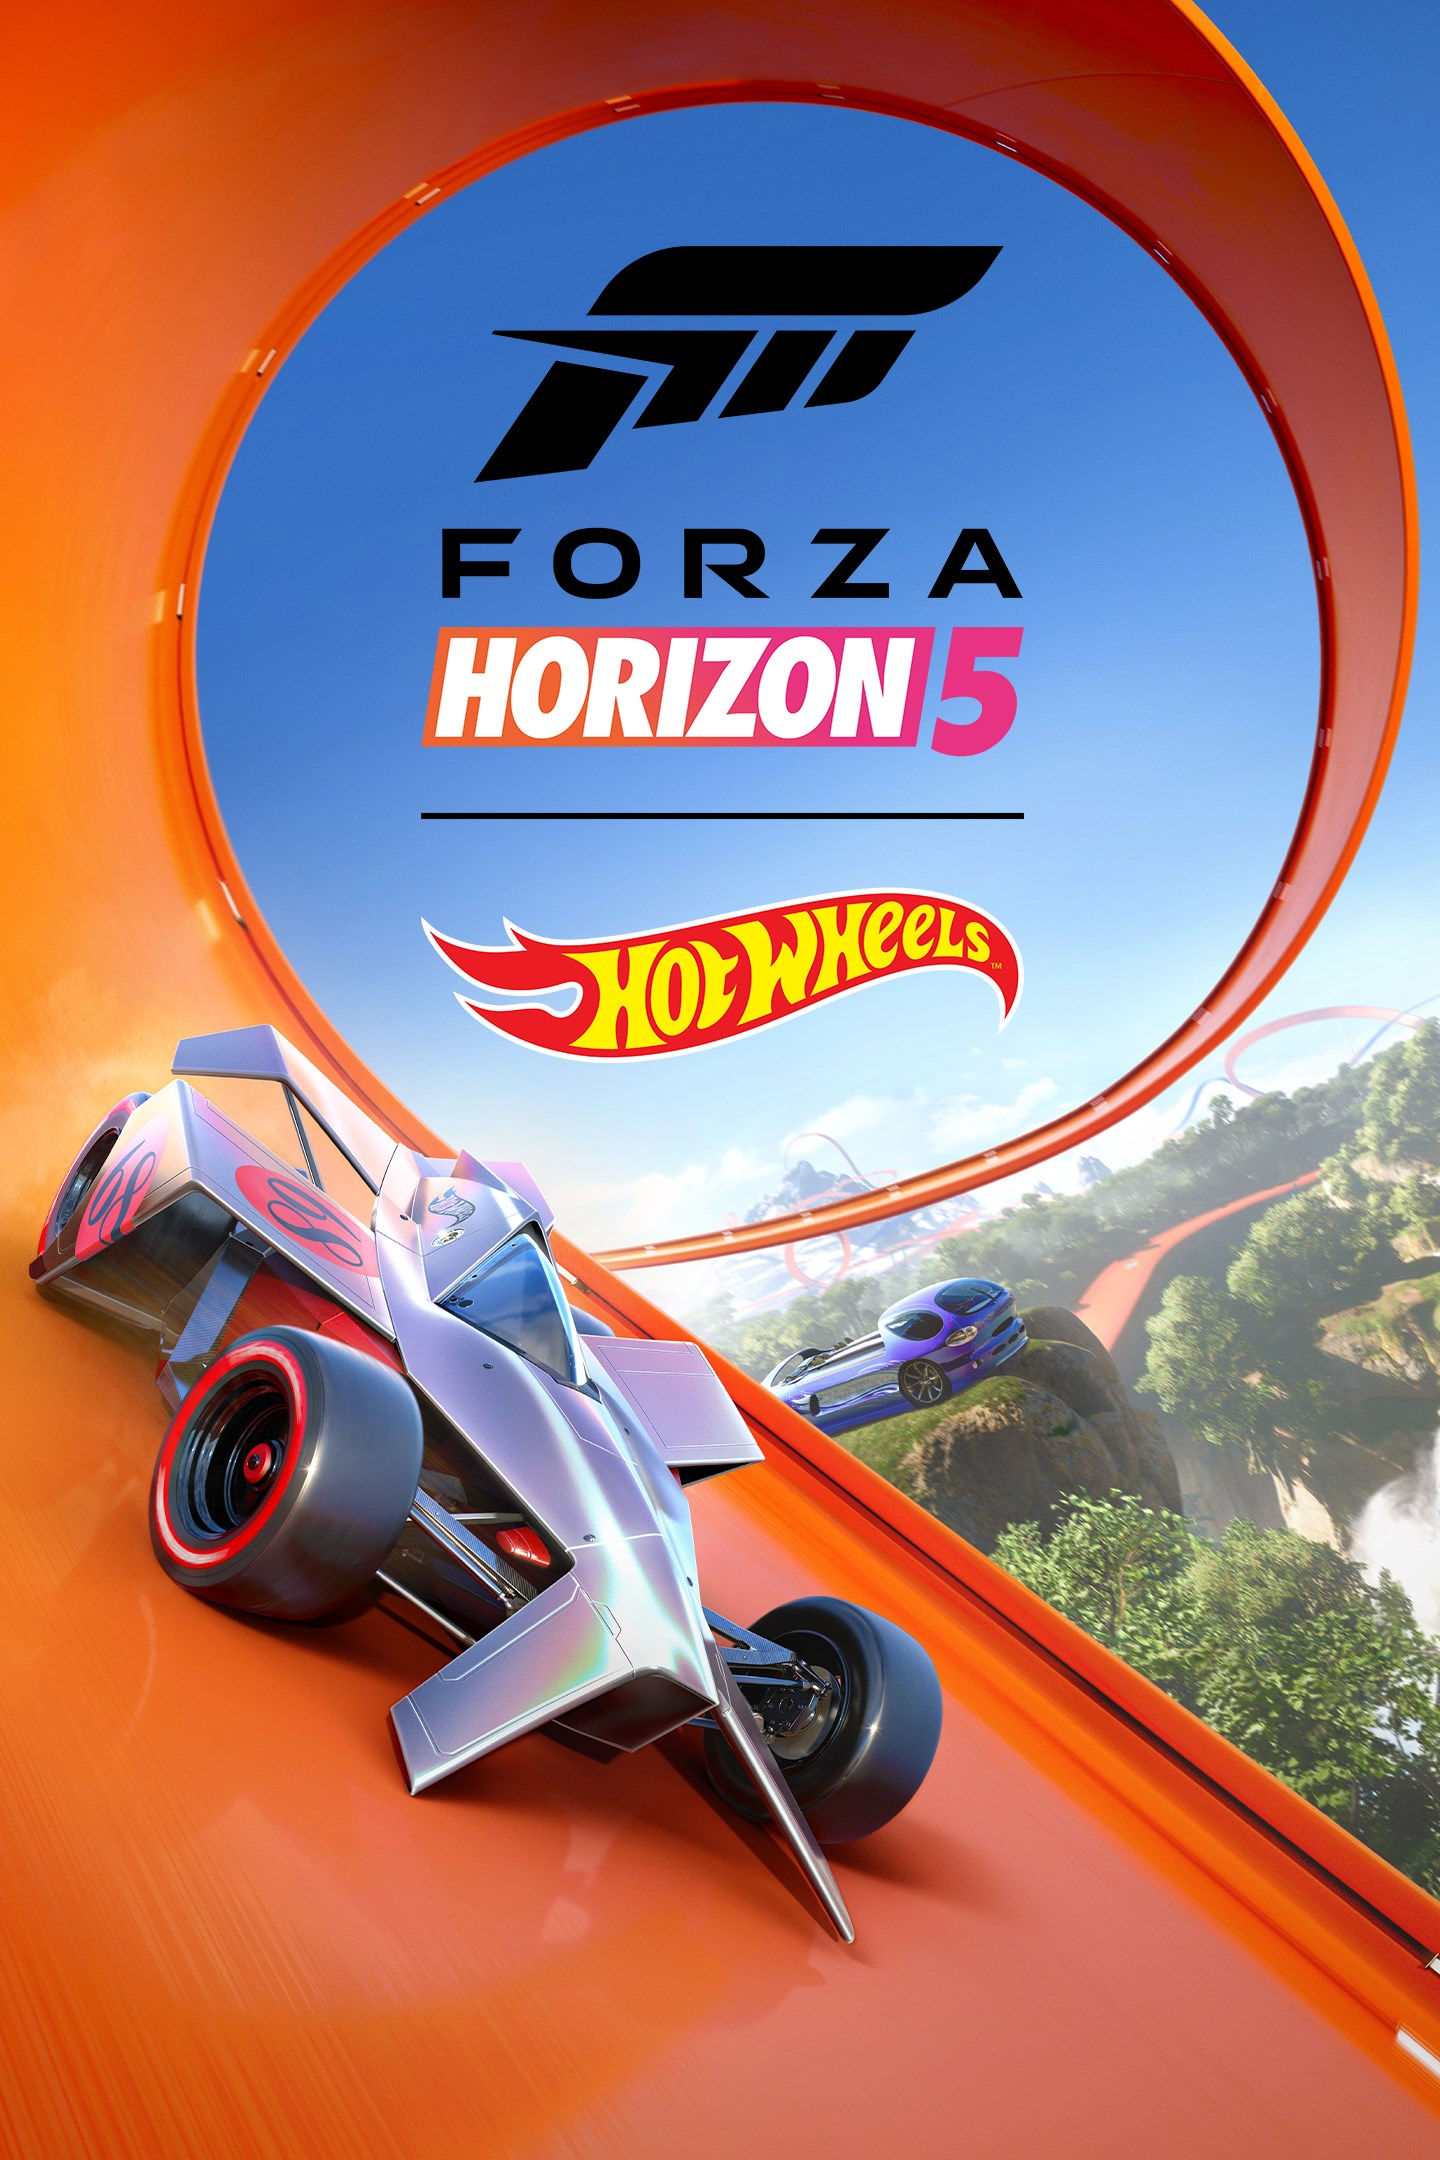 Forza Horizon 2/Cars, Forza Wiki